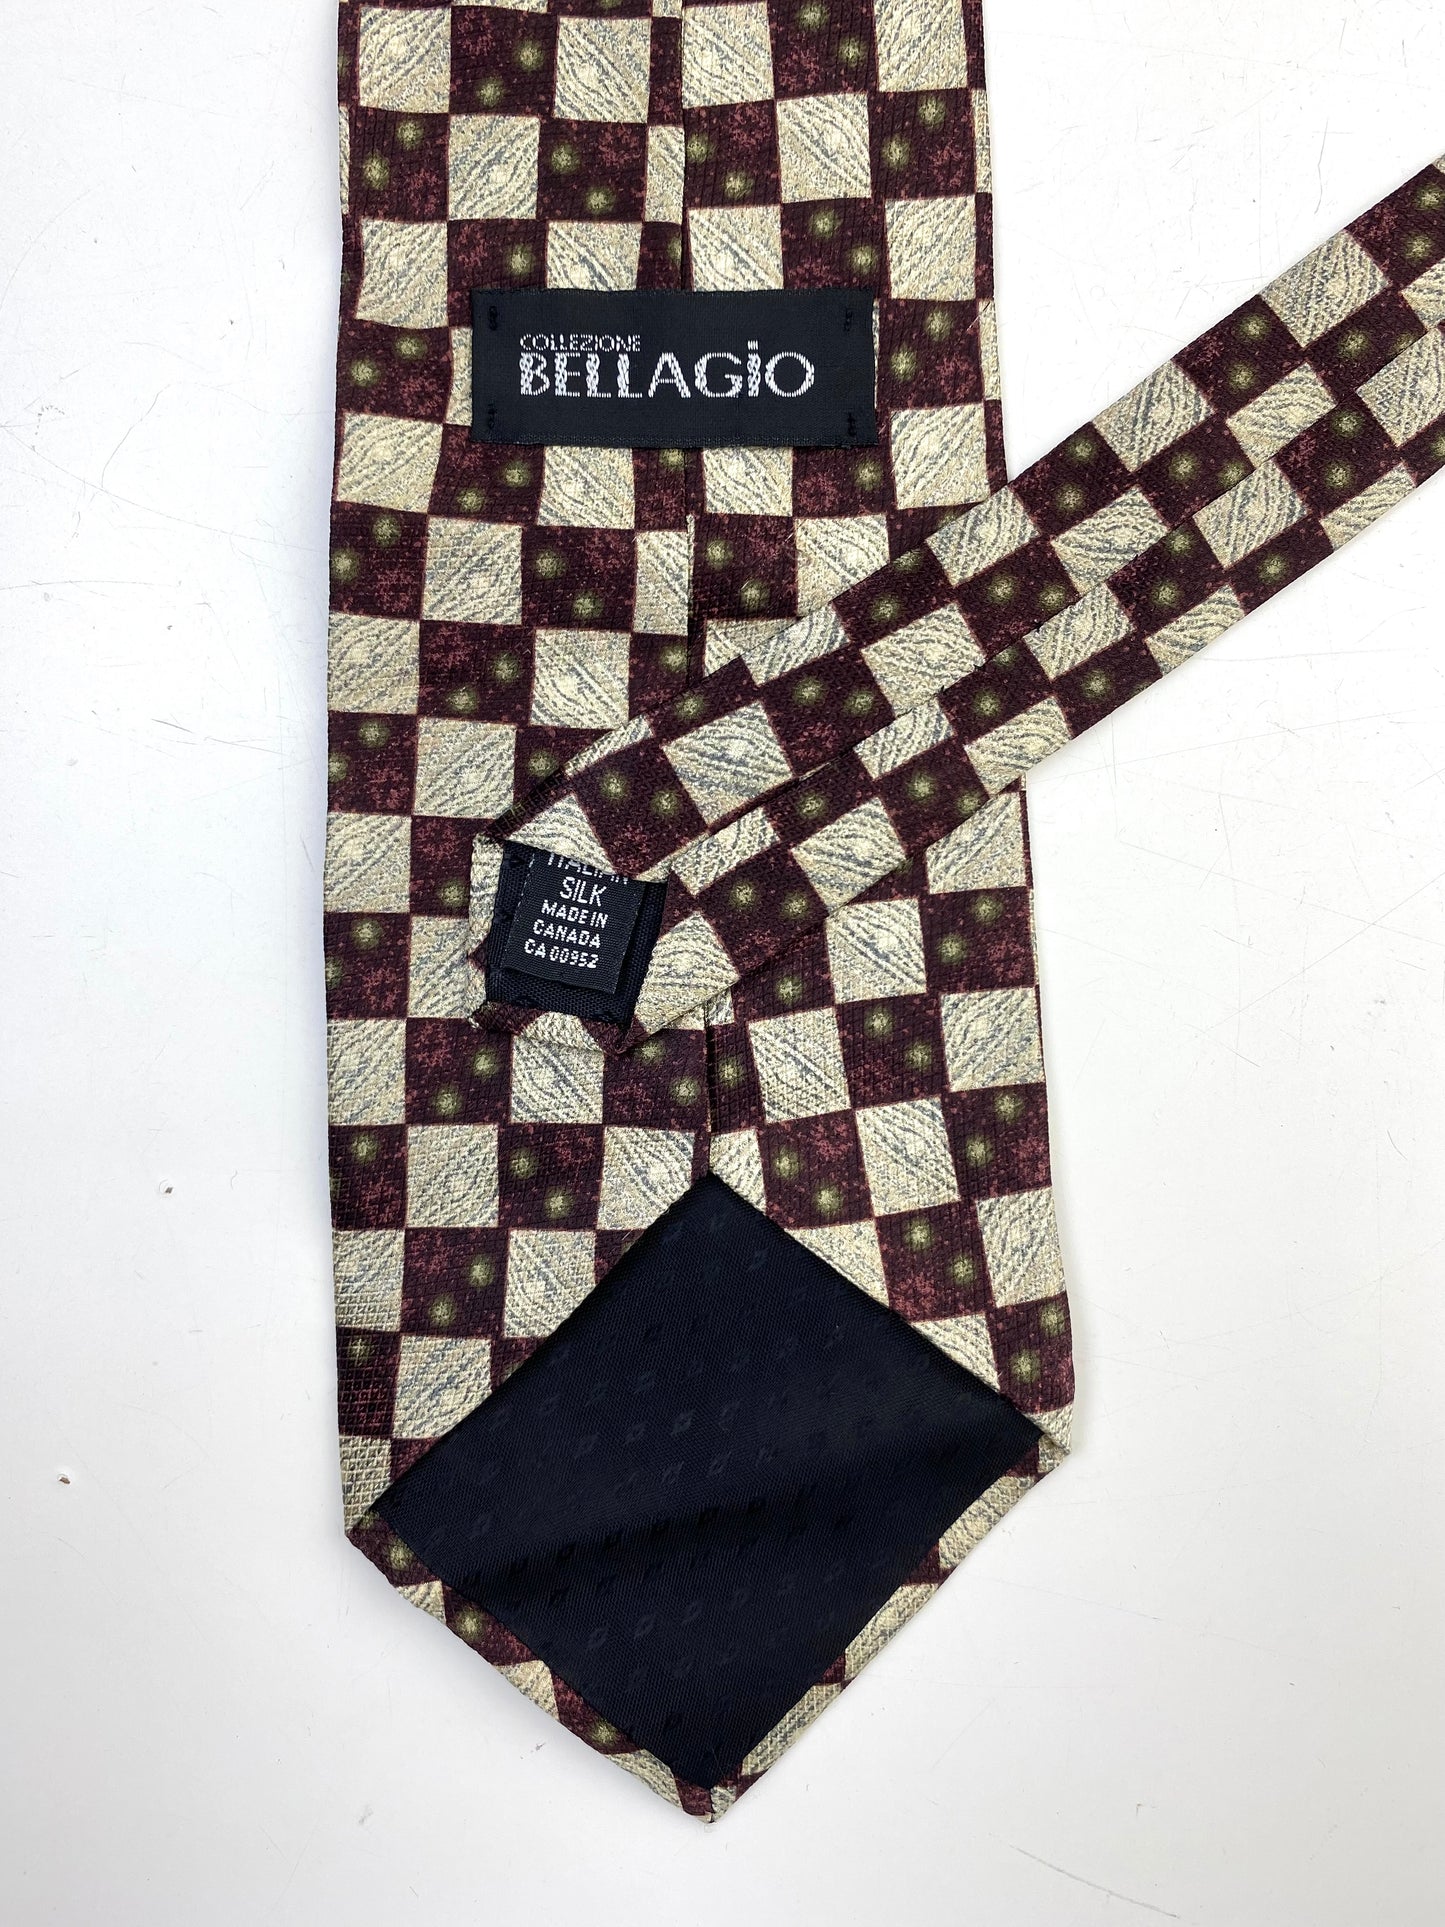 90s Deadstock Silk Necktie, Vintage Wine/ Beige Check Pattern Tie, NOS